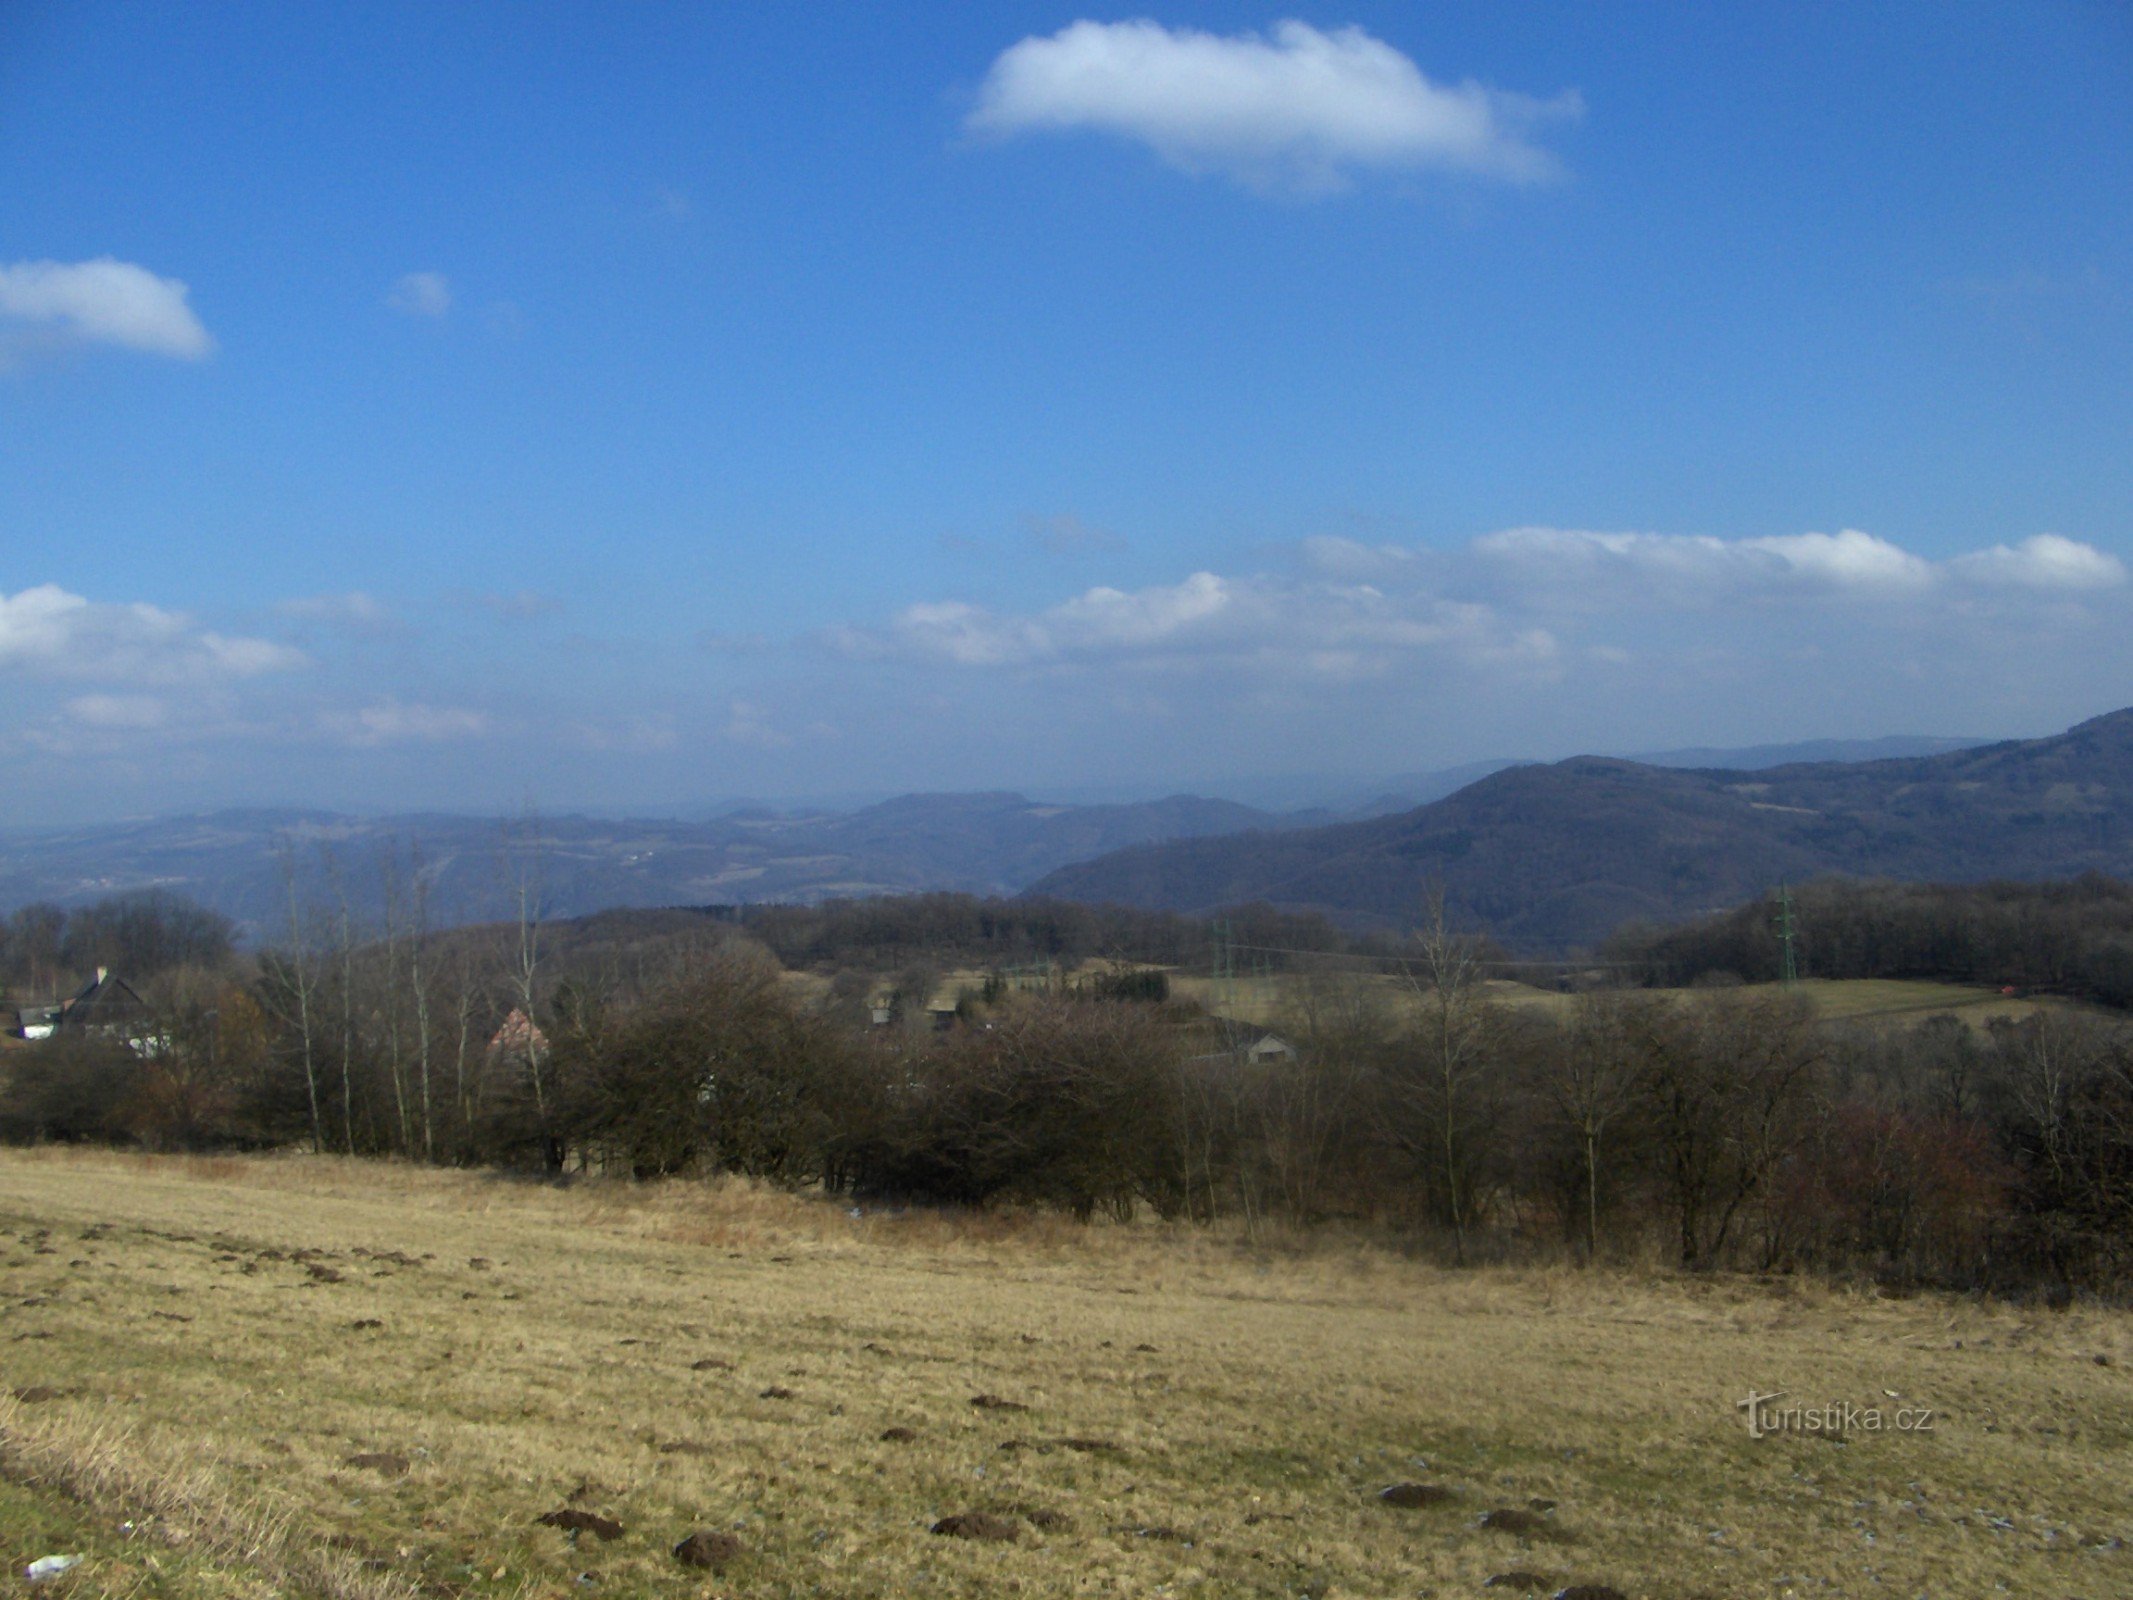 Așezarea Pohoří, Děčínský Sněžník în fundal